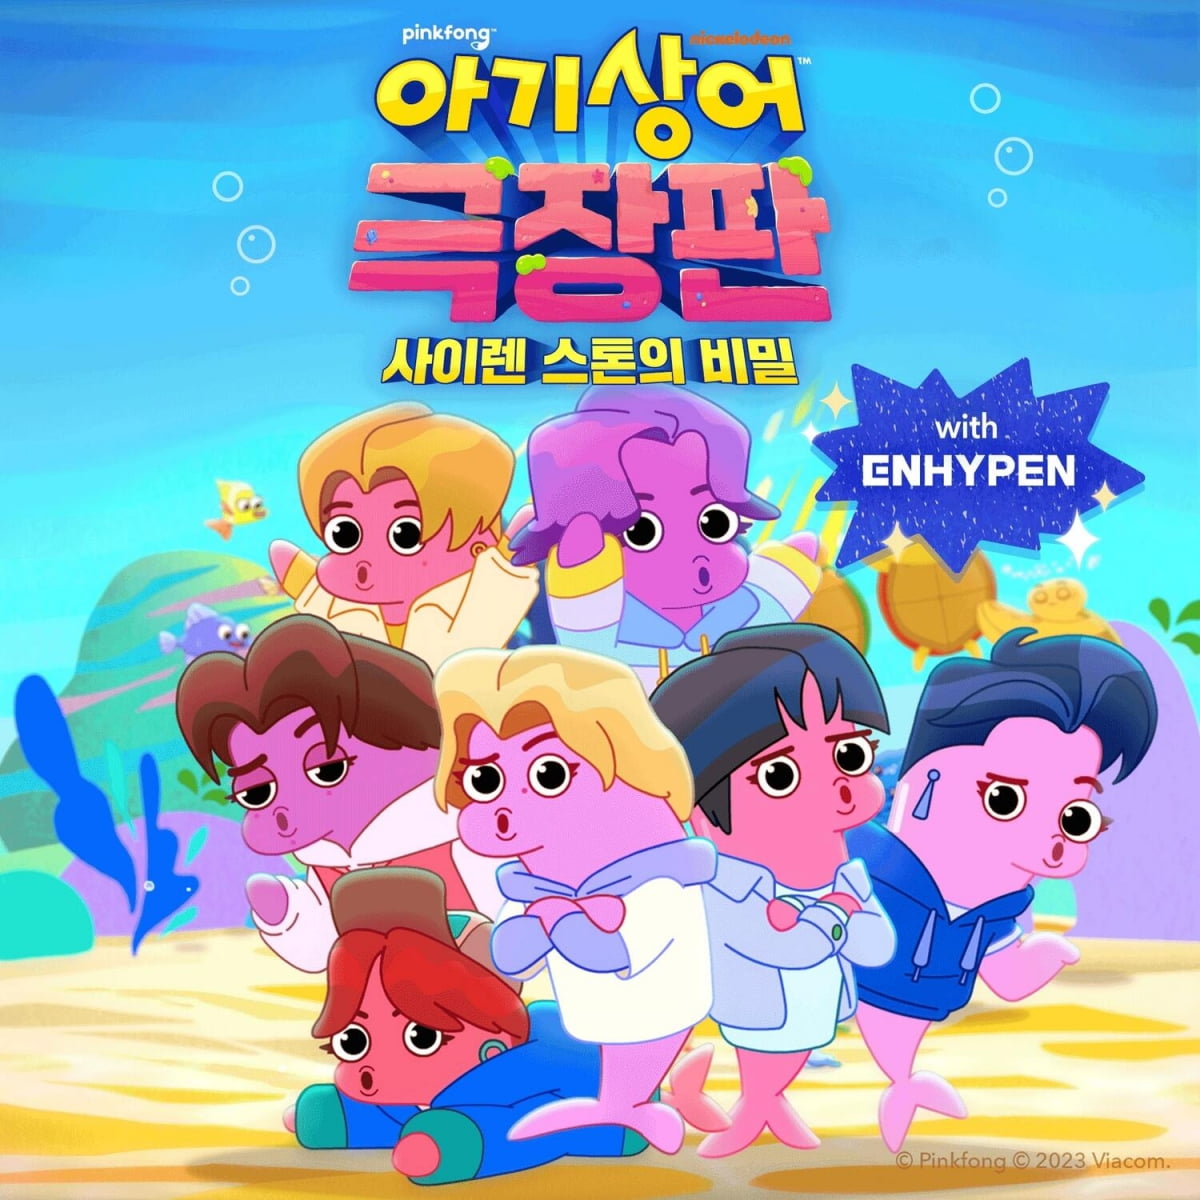 エンハイフン、グローバル超大統領チョン・ジョジュン「ピンクポンベビーサメ」OST歌唱